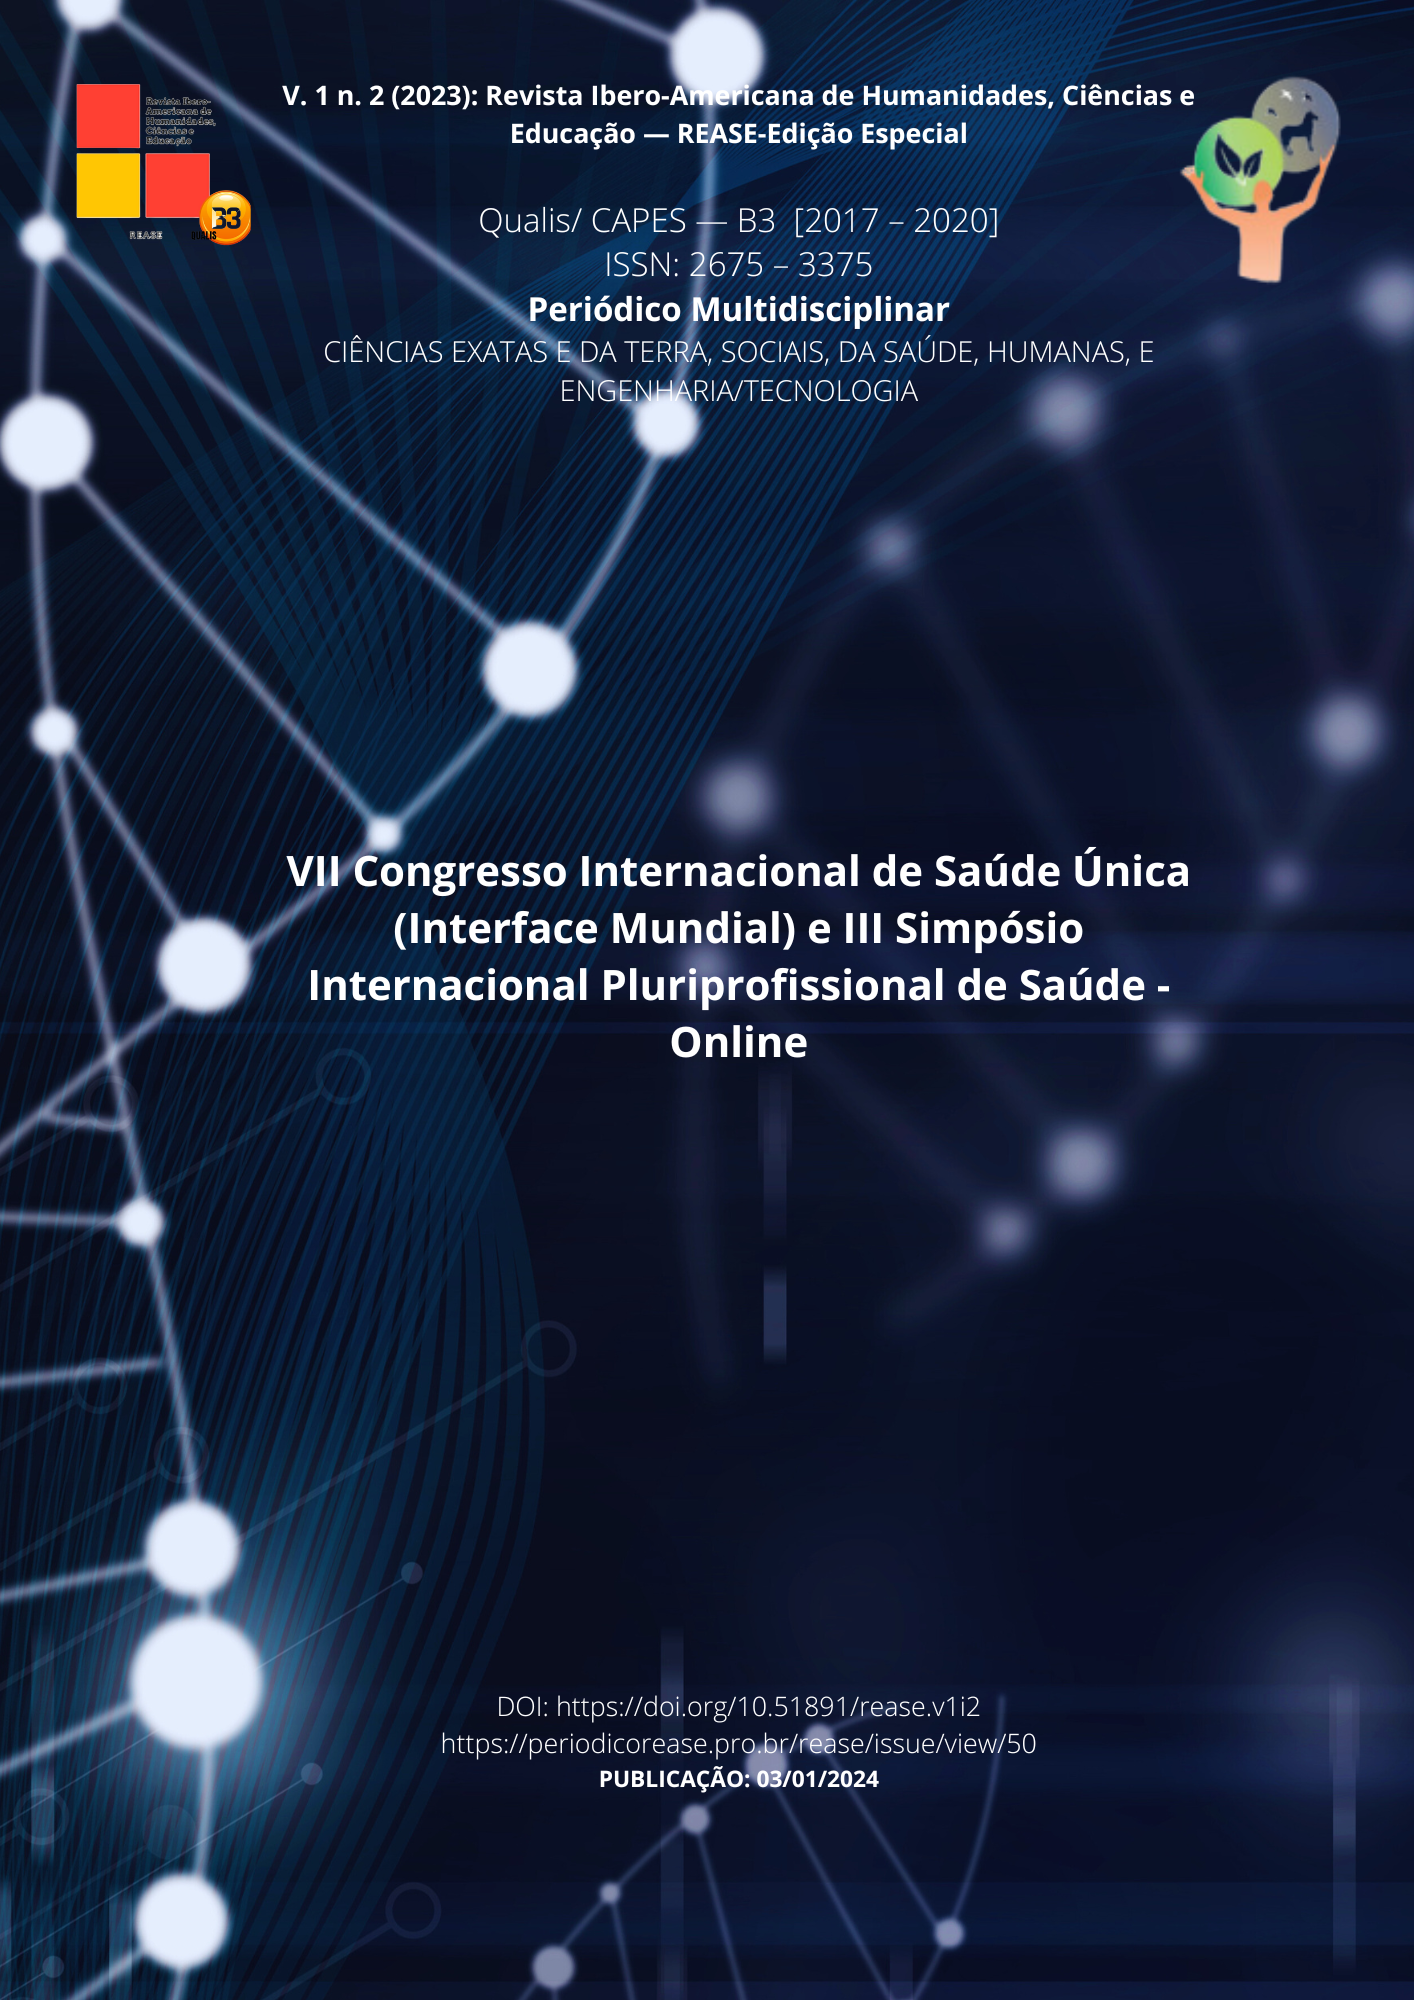 					Visualizar v. 1 n. 2 (2023): Revista Ibero-Americana de Humanidades, Ciências e Educação- REASE - Edição Especial v. 2 (2023)
				